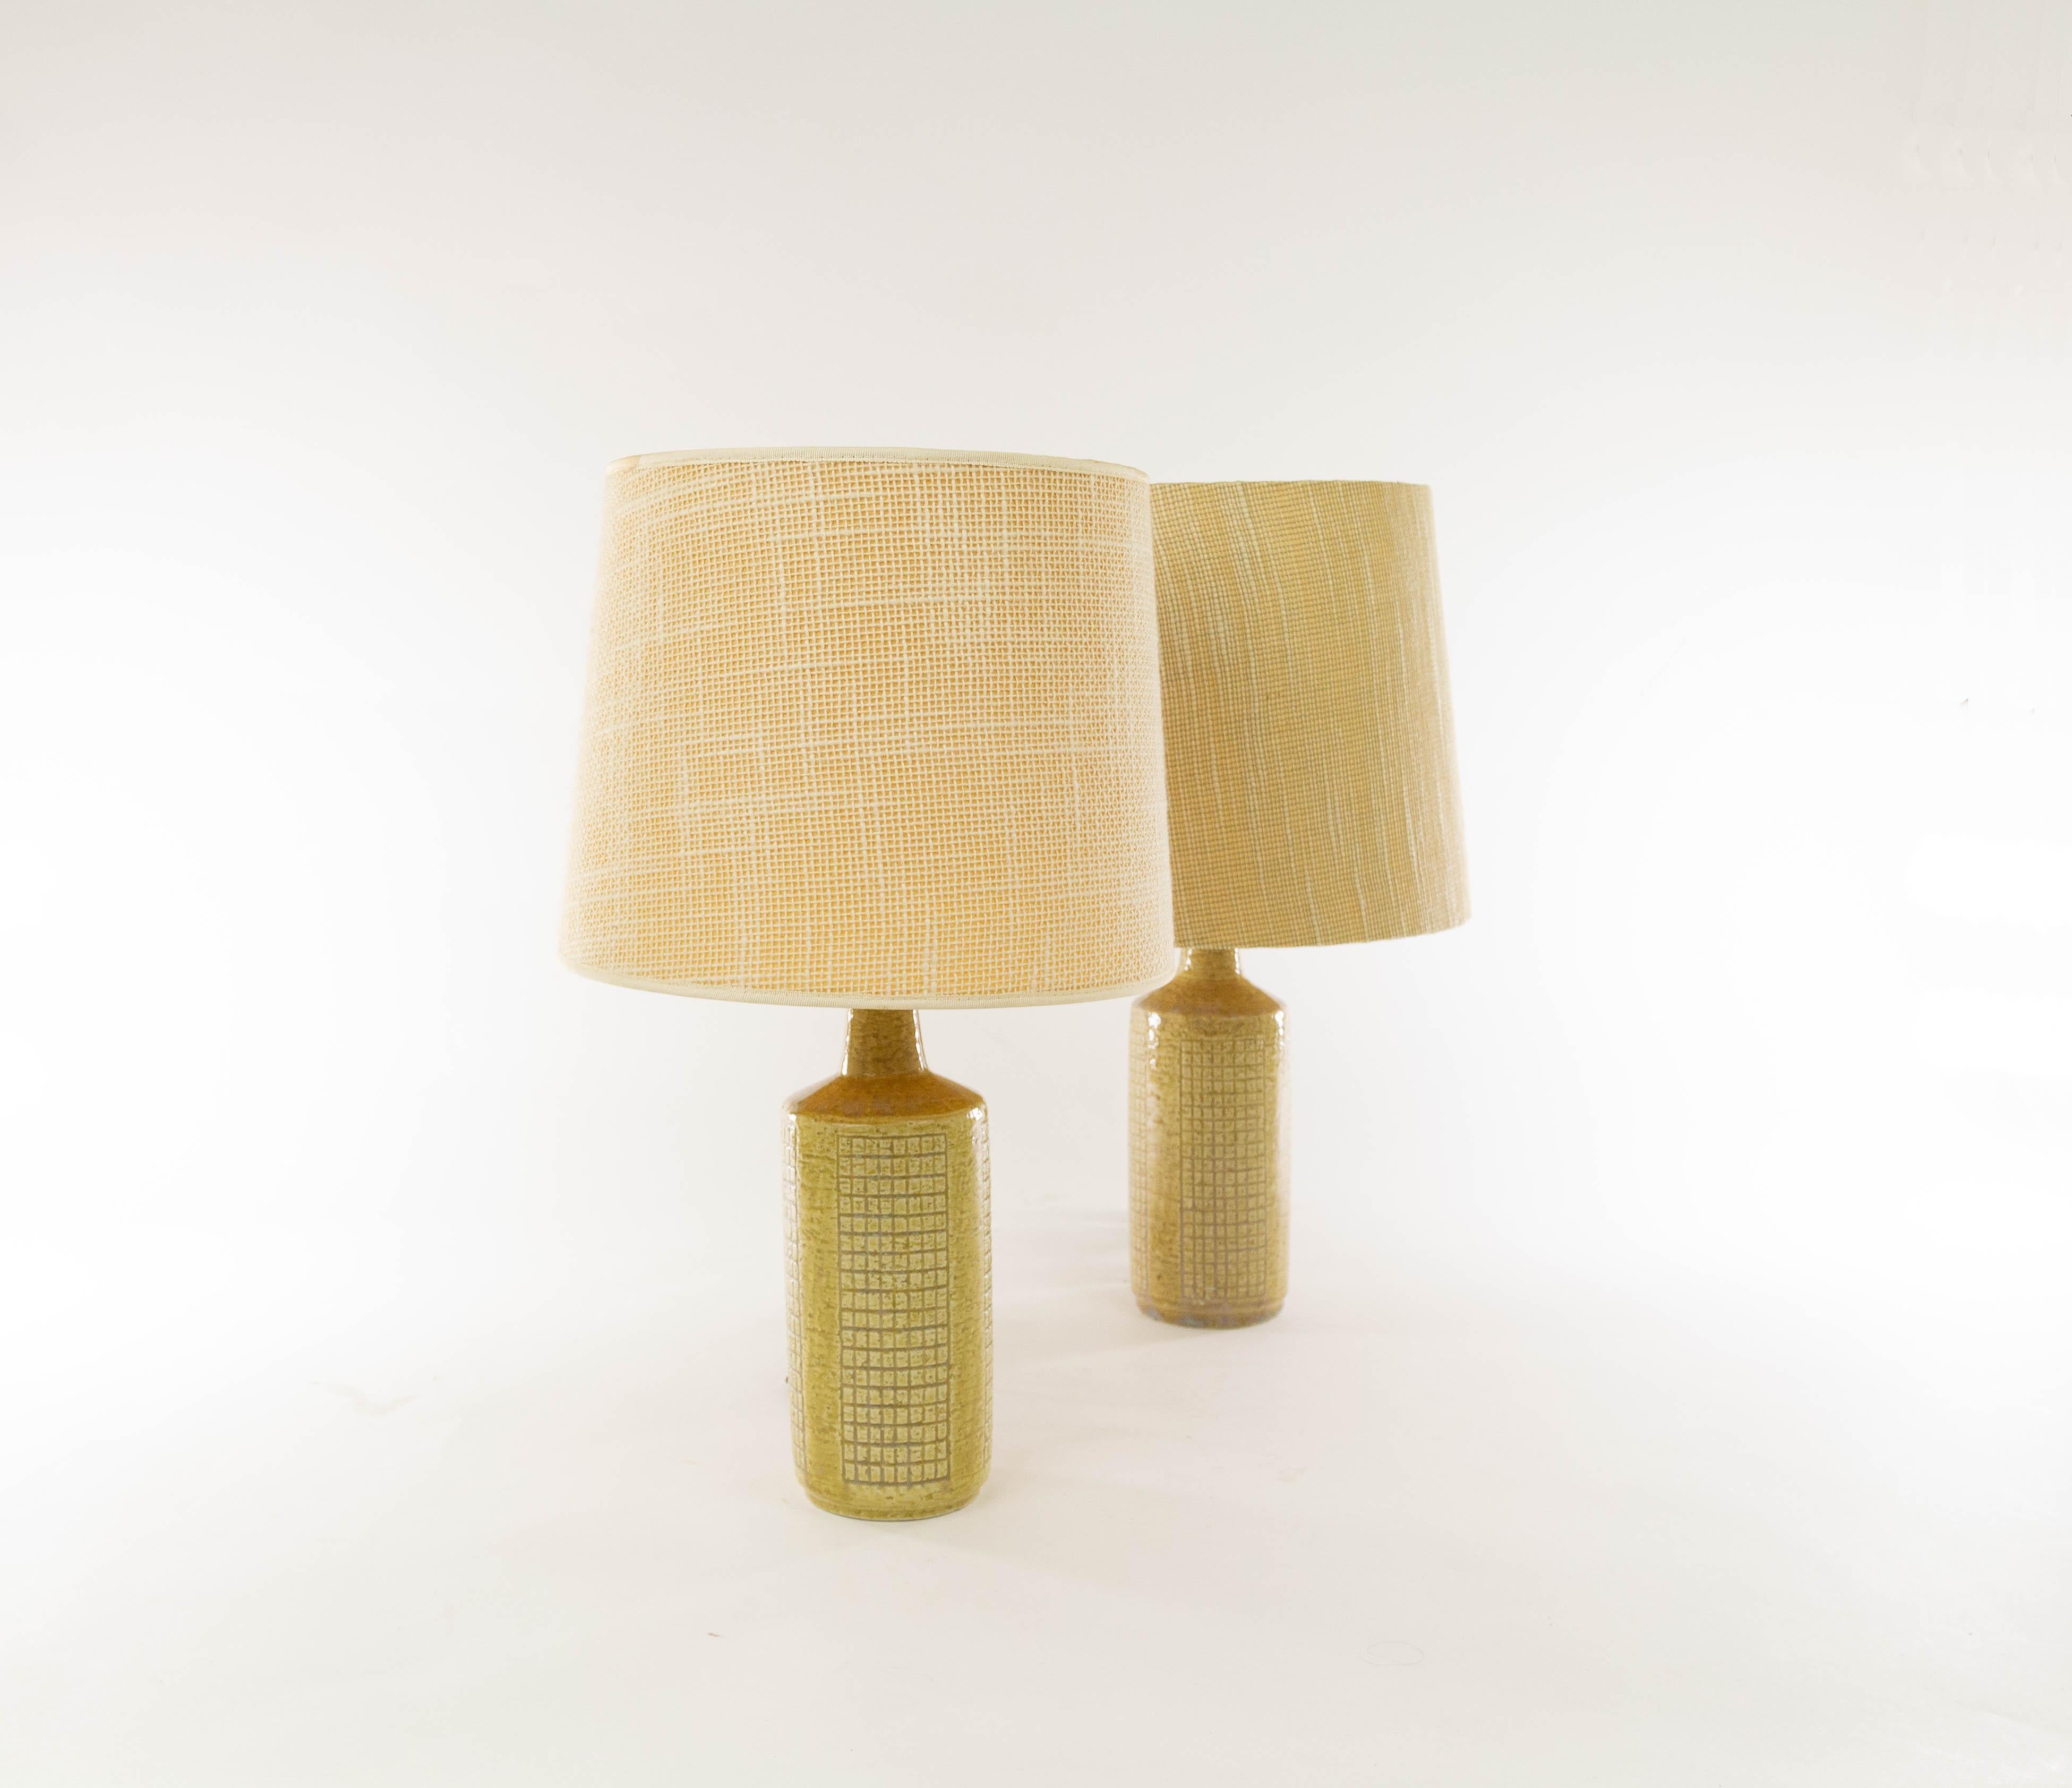 Paire de lampes de table DL/30 réalisées par Annelise et Per Linnemann-Schmidt pour Palshus dans les années 1960. 

Les deux pièces sont de couleur beige ou 